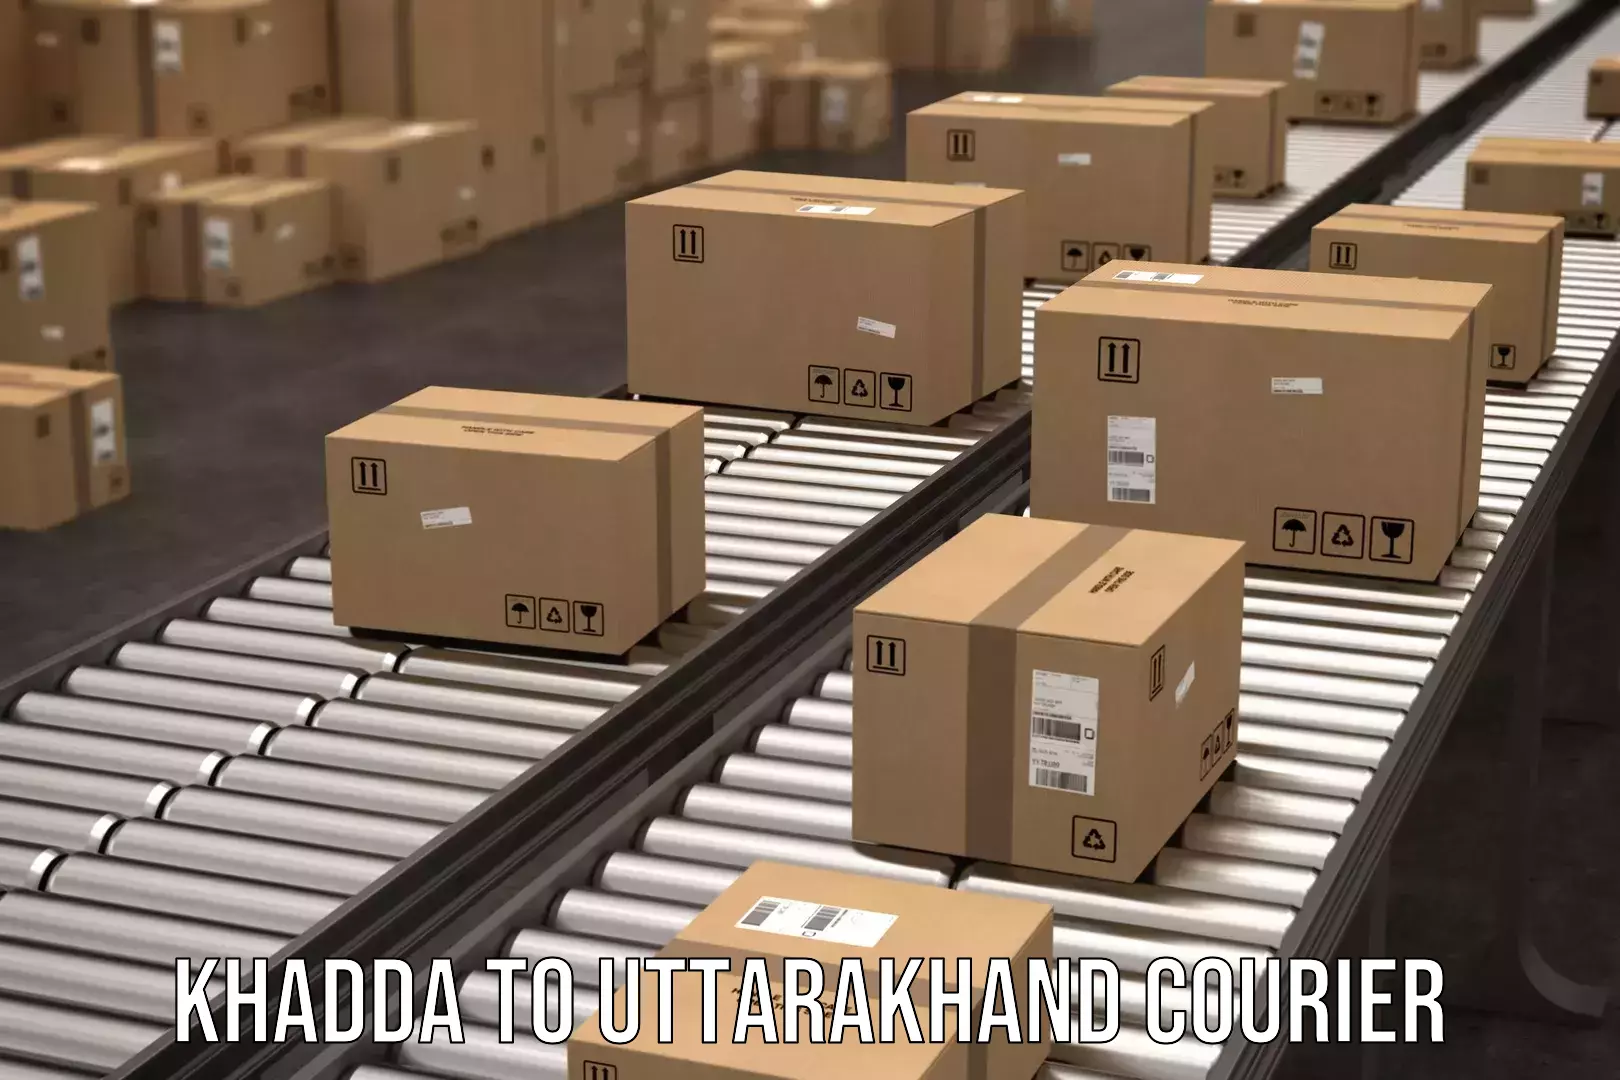 Customer-centric shipping in Khadda to Paithani